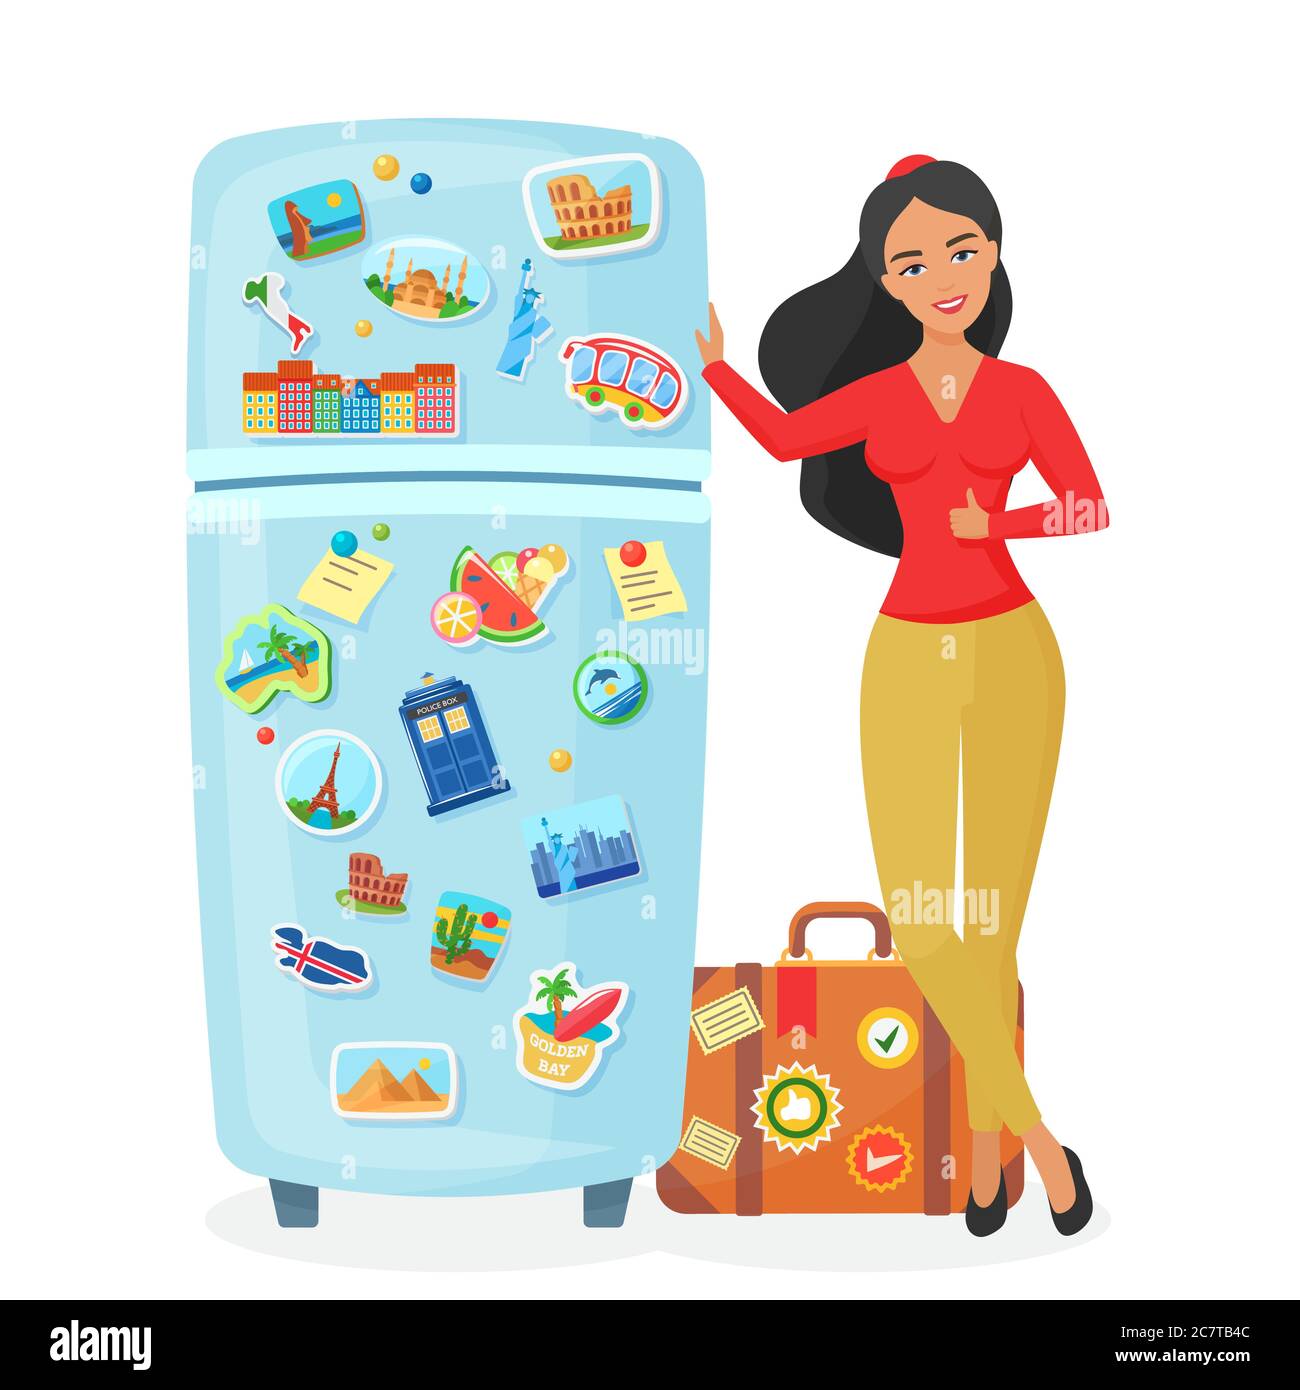 Reisende junge hübsche Frau zeigt Kühlschrank mit Souvenir berühmten Orten Magnete flache Vektor-Illustration. Reisebüro-Konzept. Stock Vektor